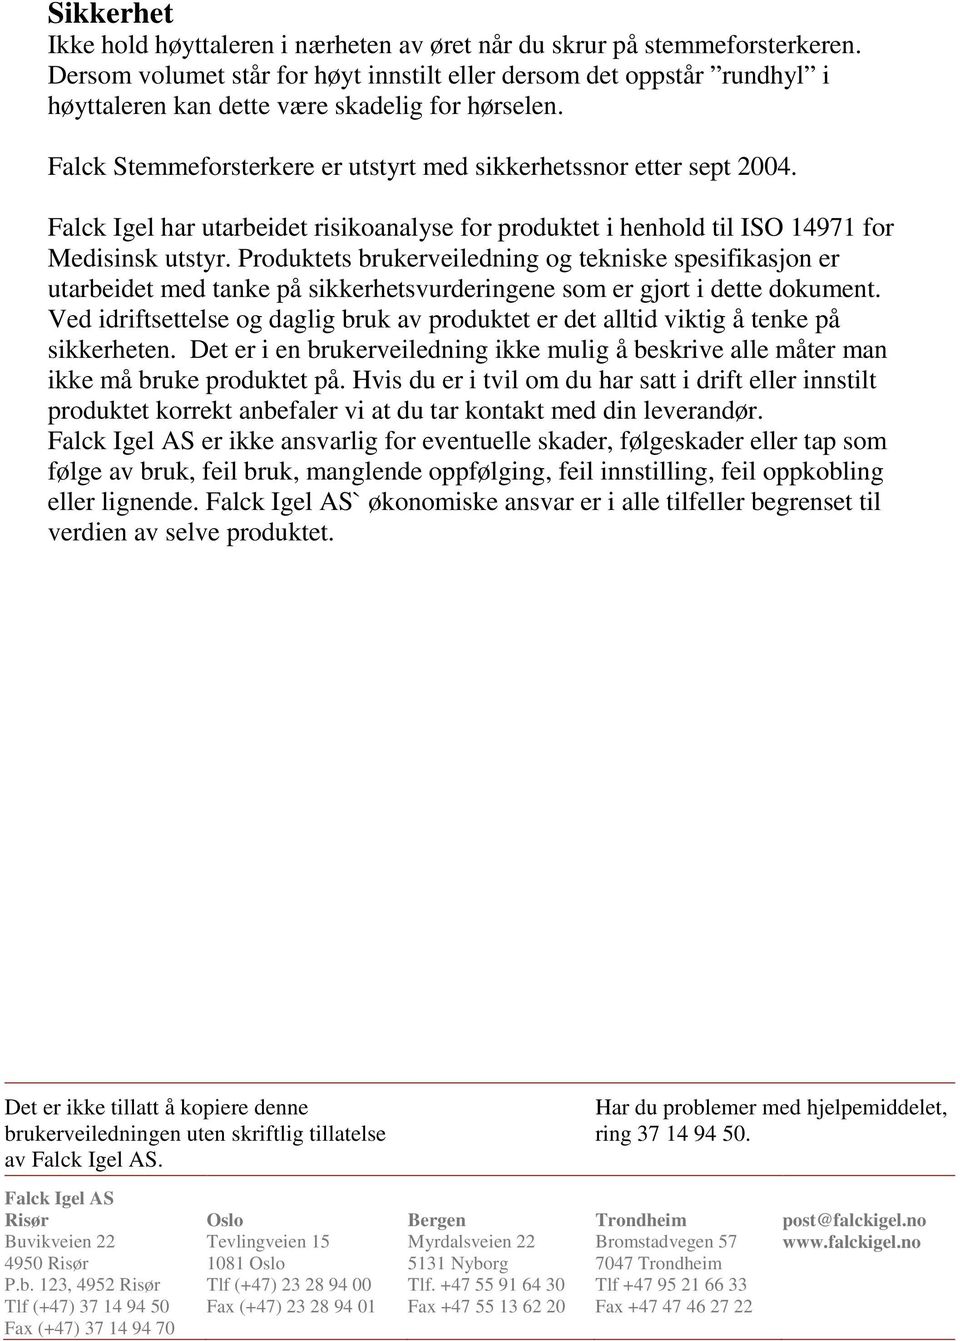 Falck Igel har utarbeidet risikoanalyse for produktet i henhold til ISO 14971 for Medisinsk utstyr.